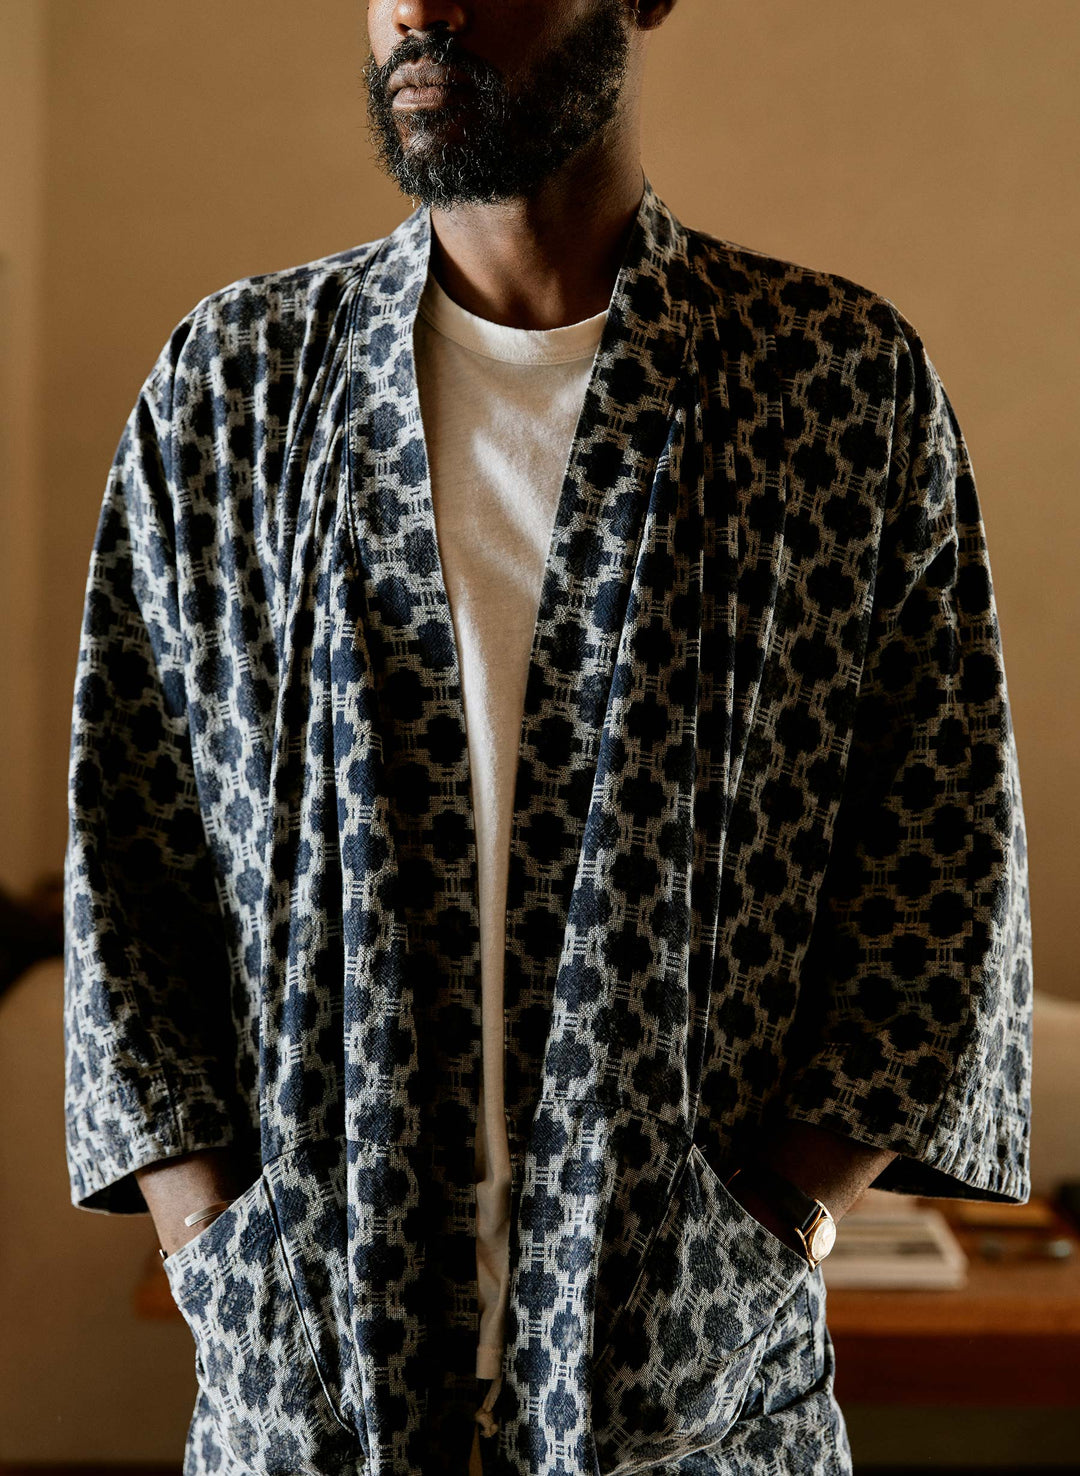 a man wearing a robe